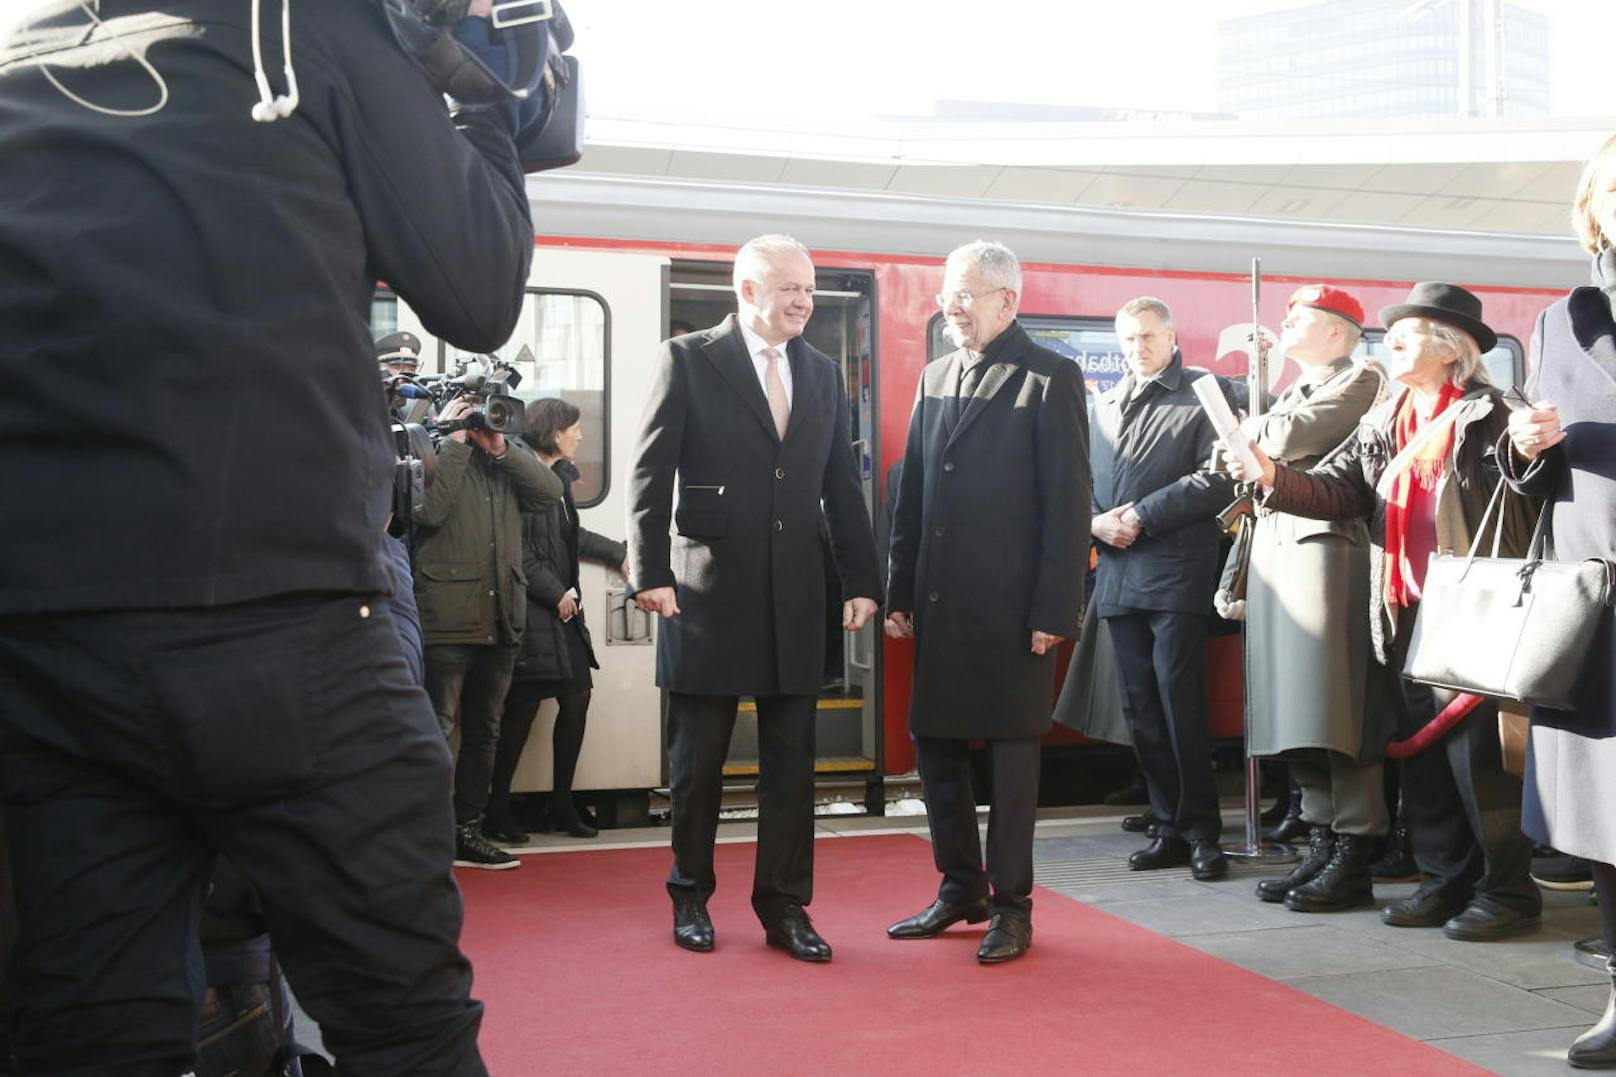 Die Staatspräsidenten Van der Bellen und Kiska beim gemeinsamen Besuch einer Kunstausstellung am Wiener Hauptbahnhof.